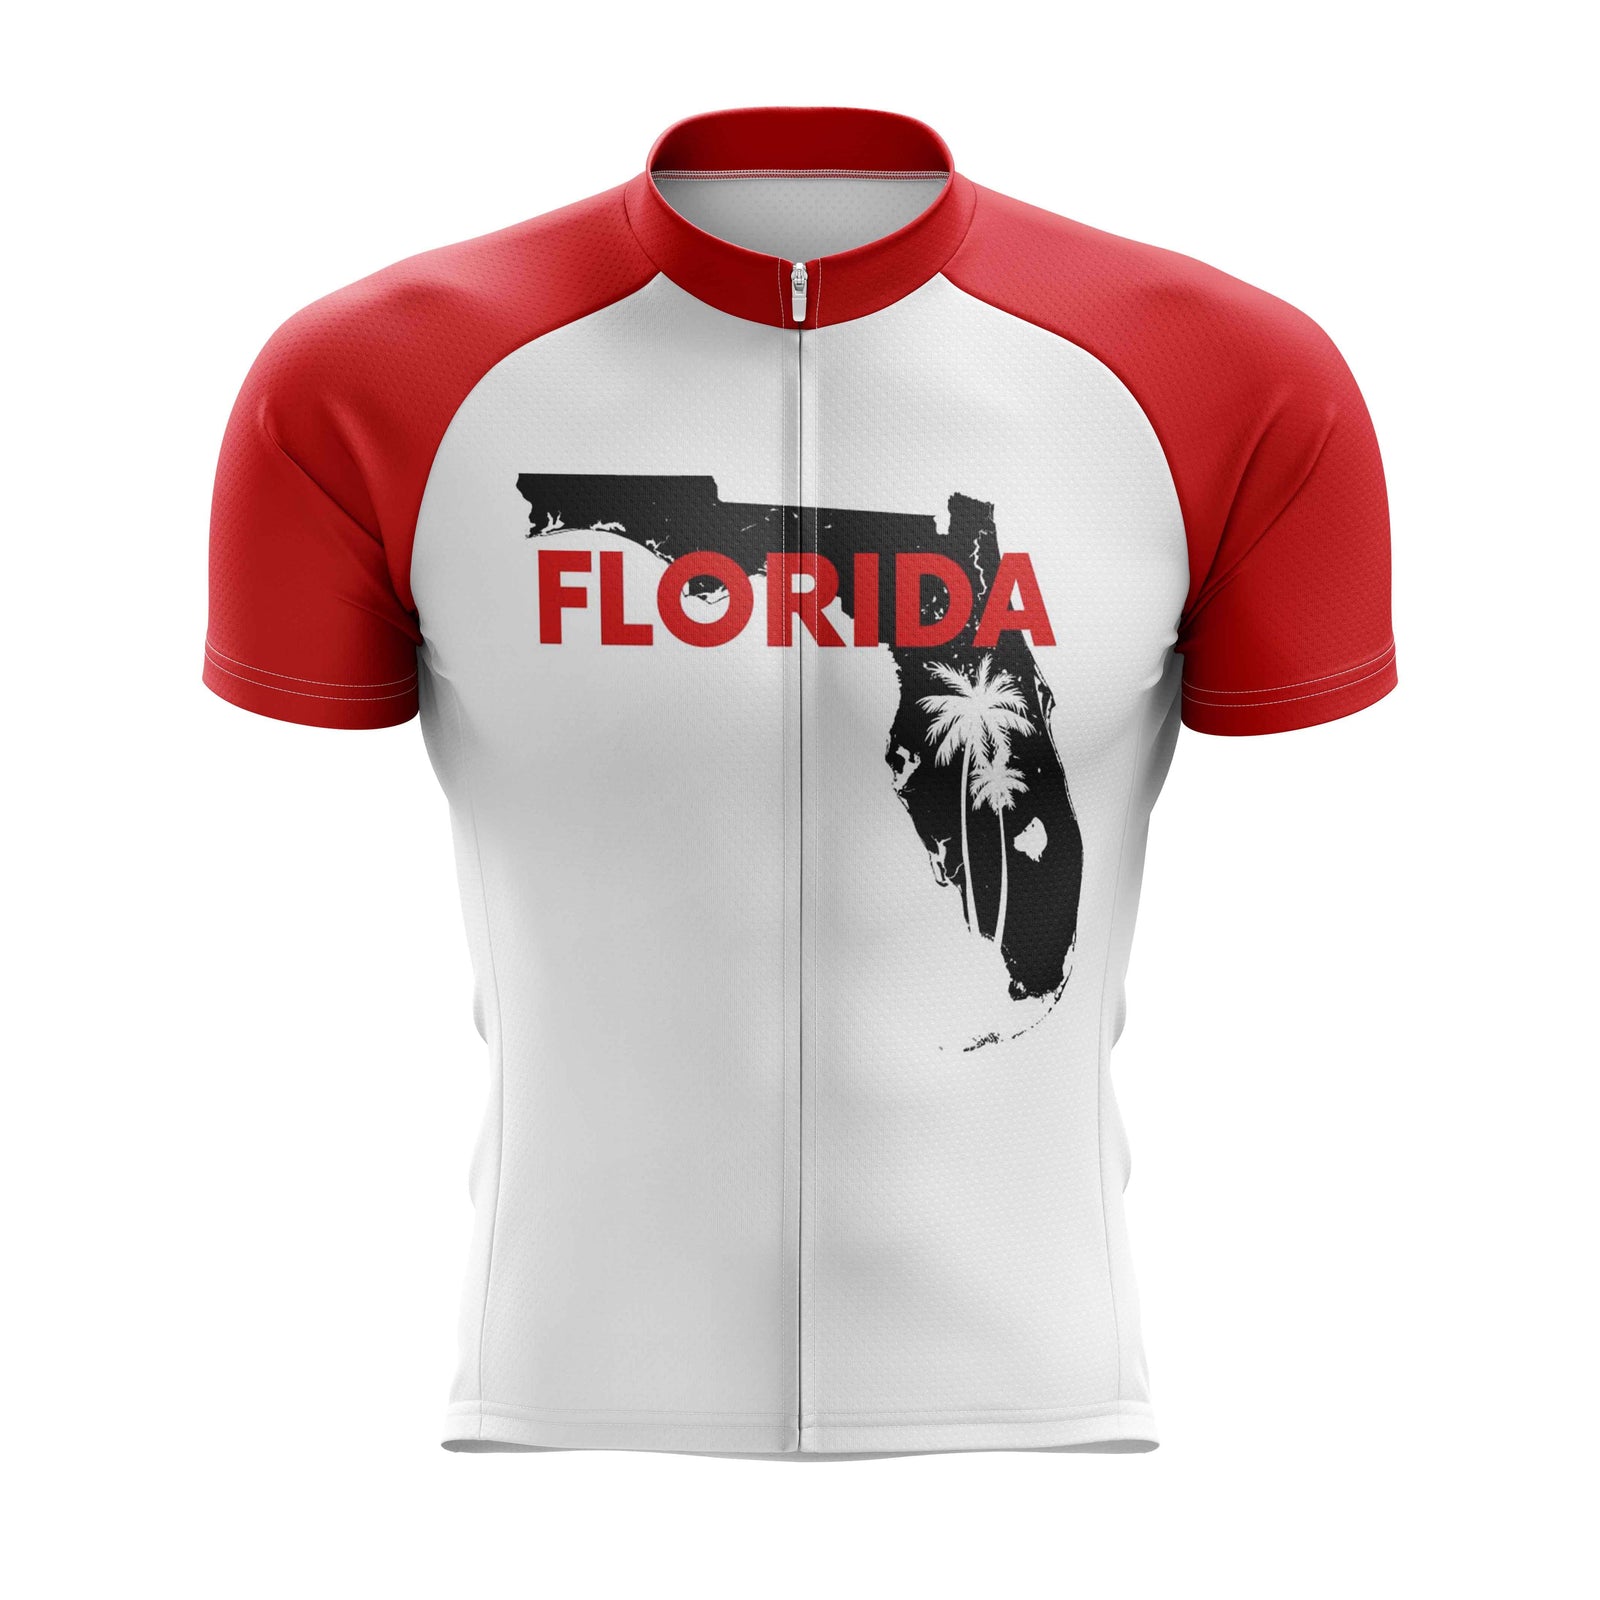 Montella Cycling Florida State Cycling Jersey